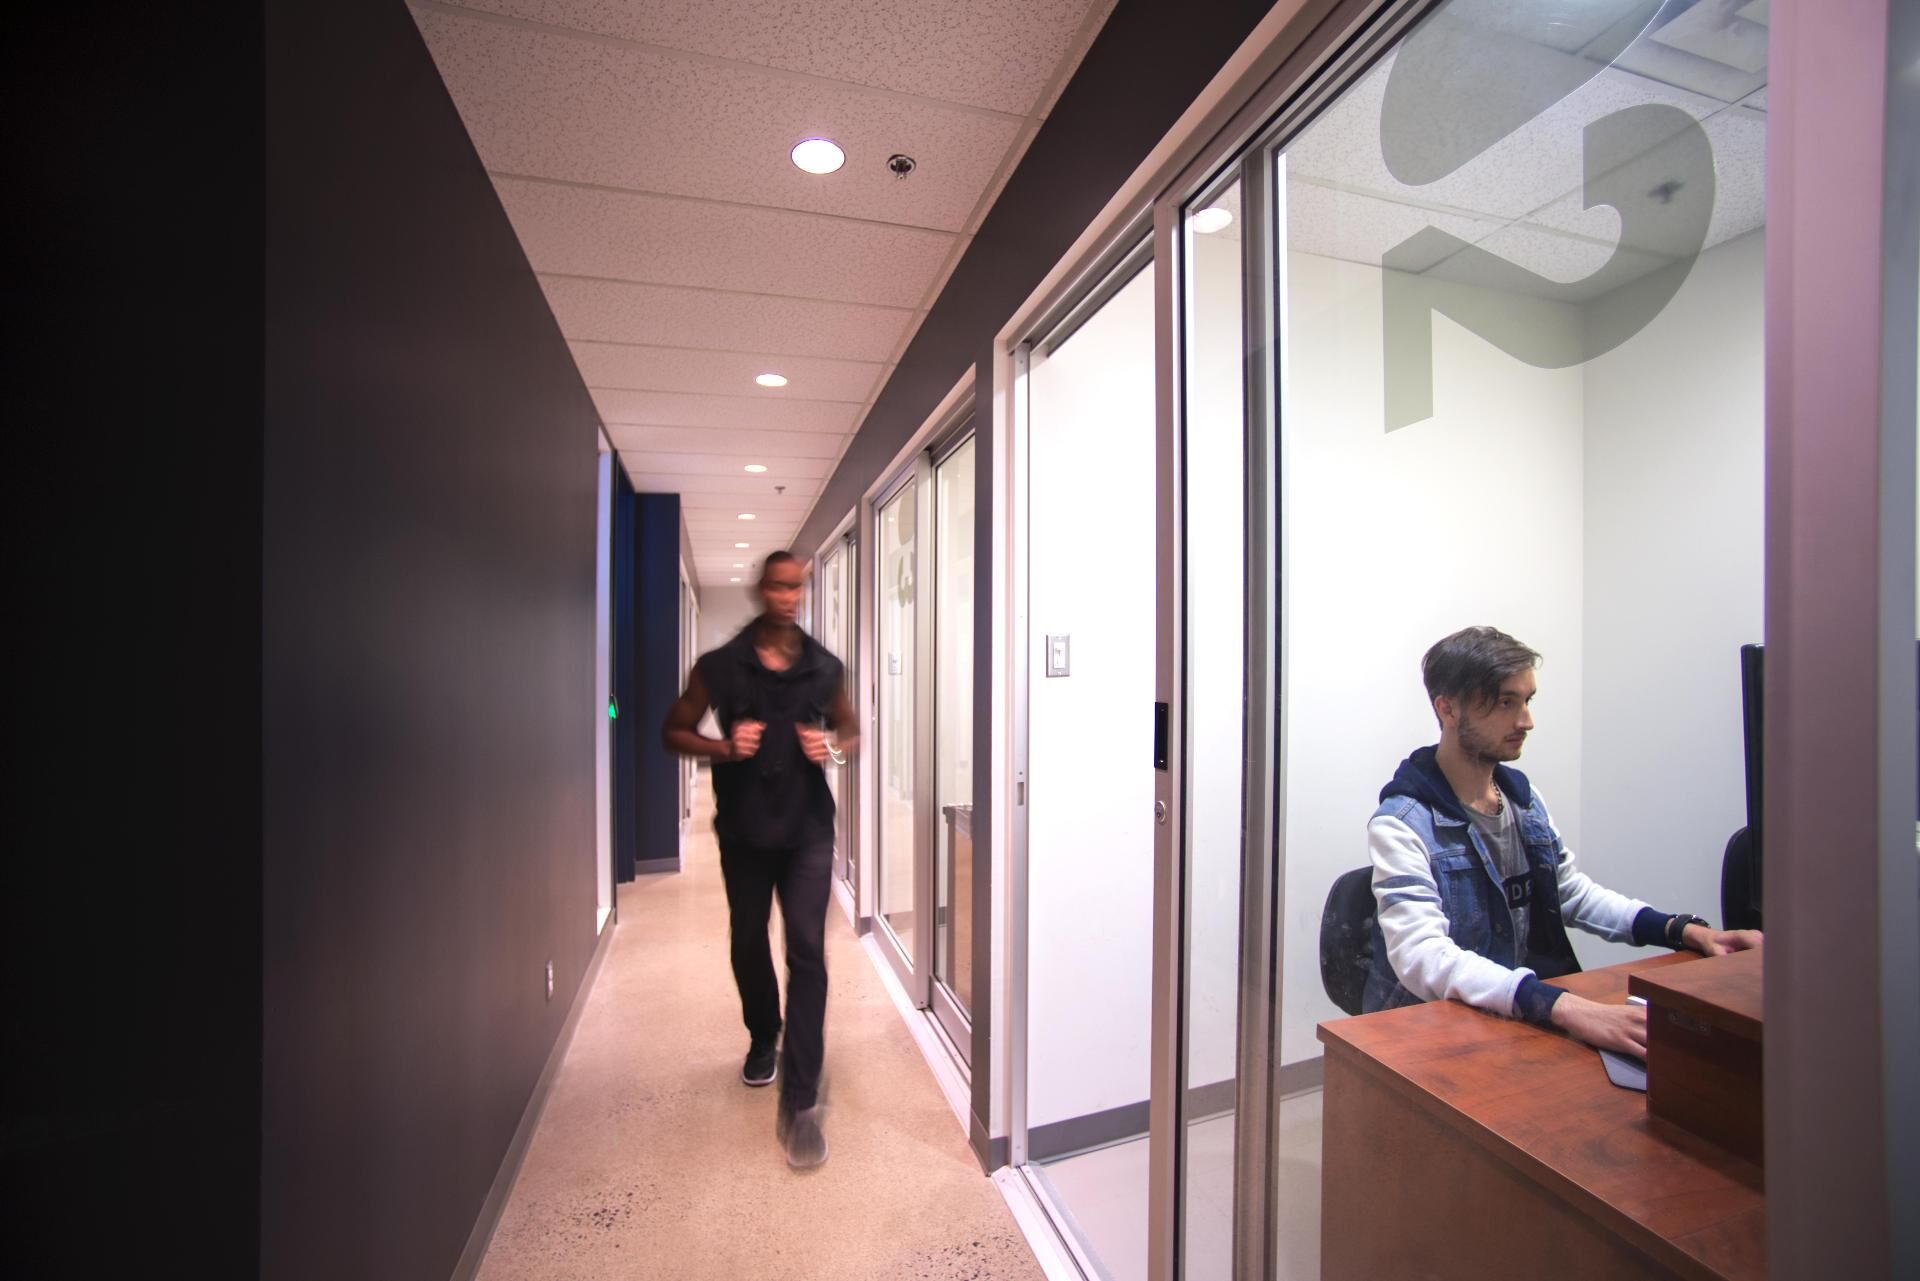 Un homme marche rapidement dans un couloir de bureau tandis qu'un autre est assis à un poste de travail avec un ordinateur.